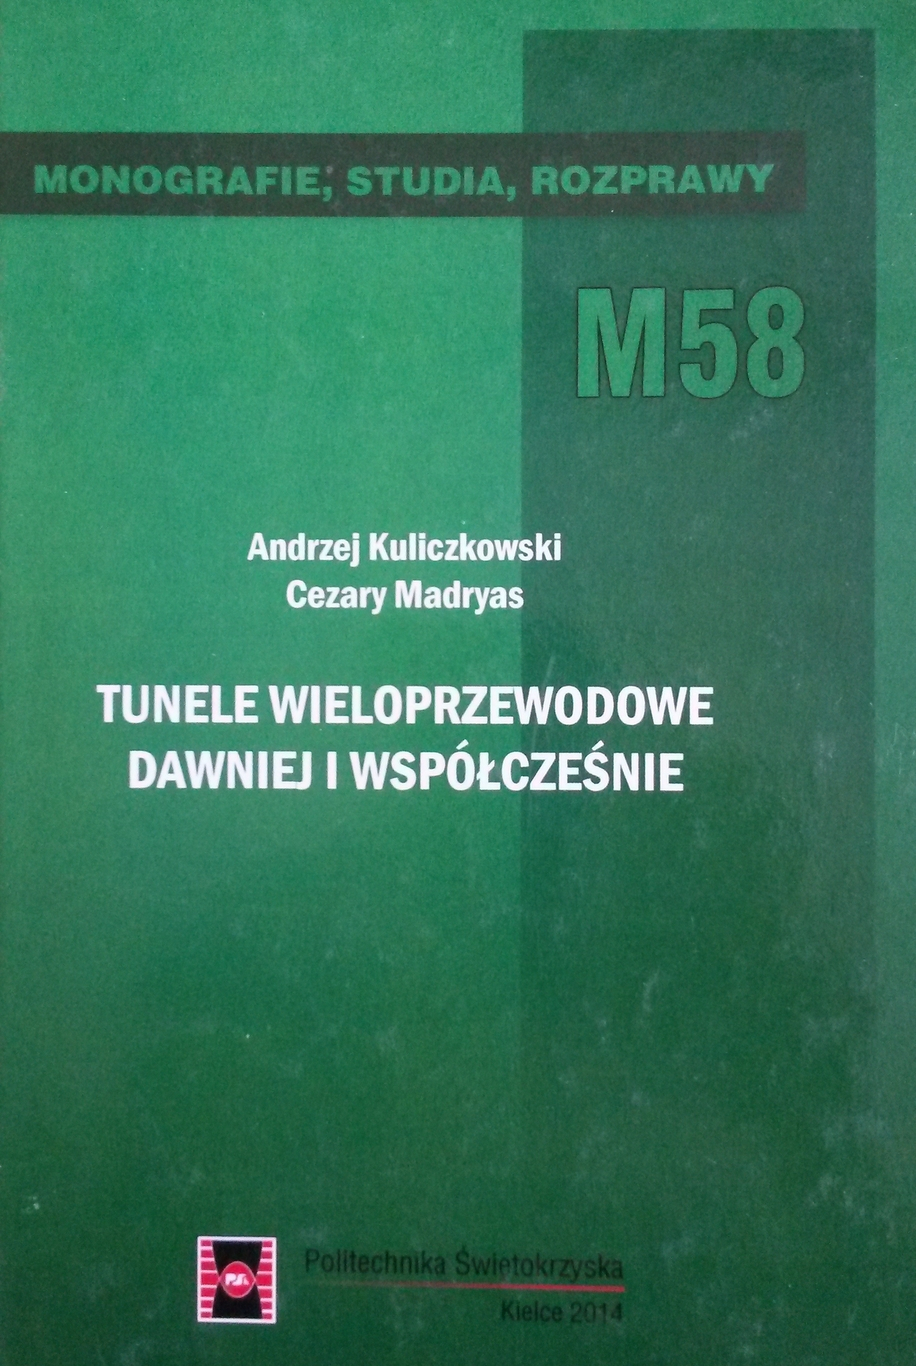 tunele_wieloprzewodowe_dawniej_i_wspolczesnie.jpg